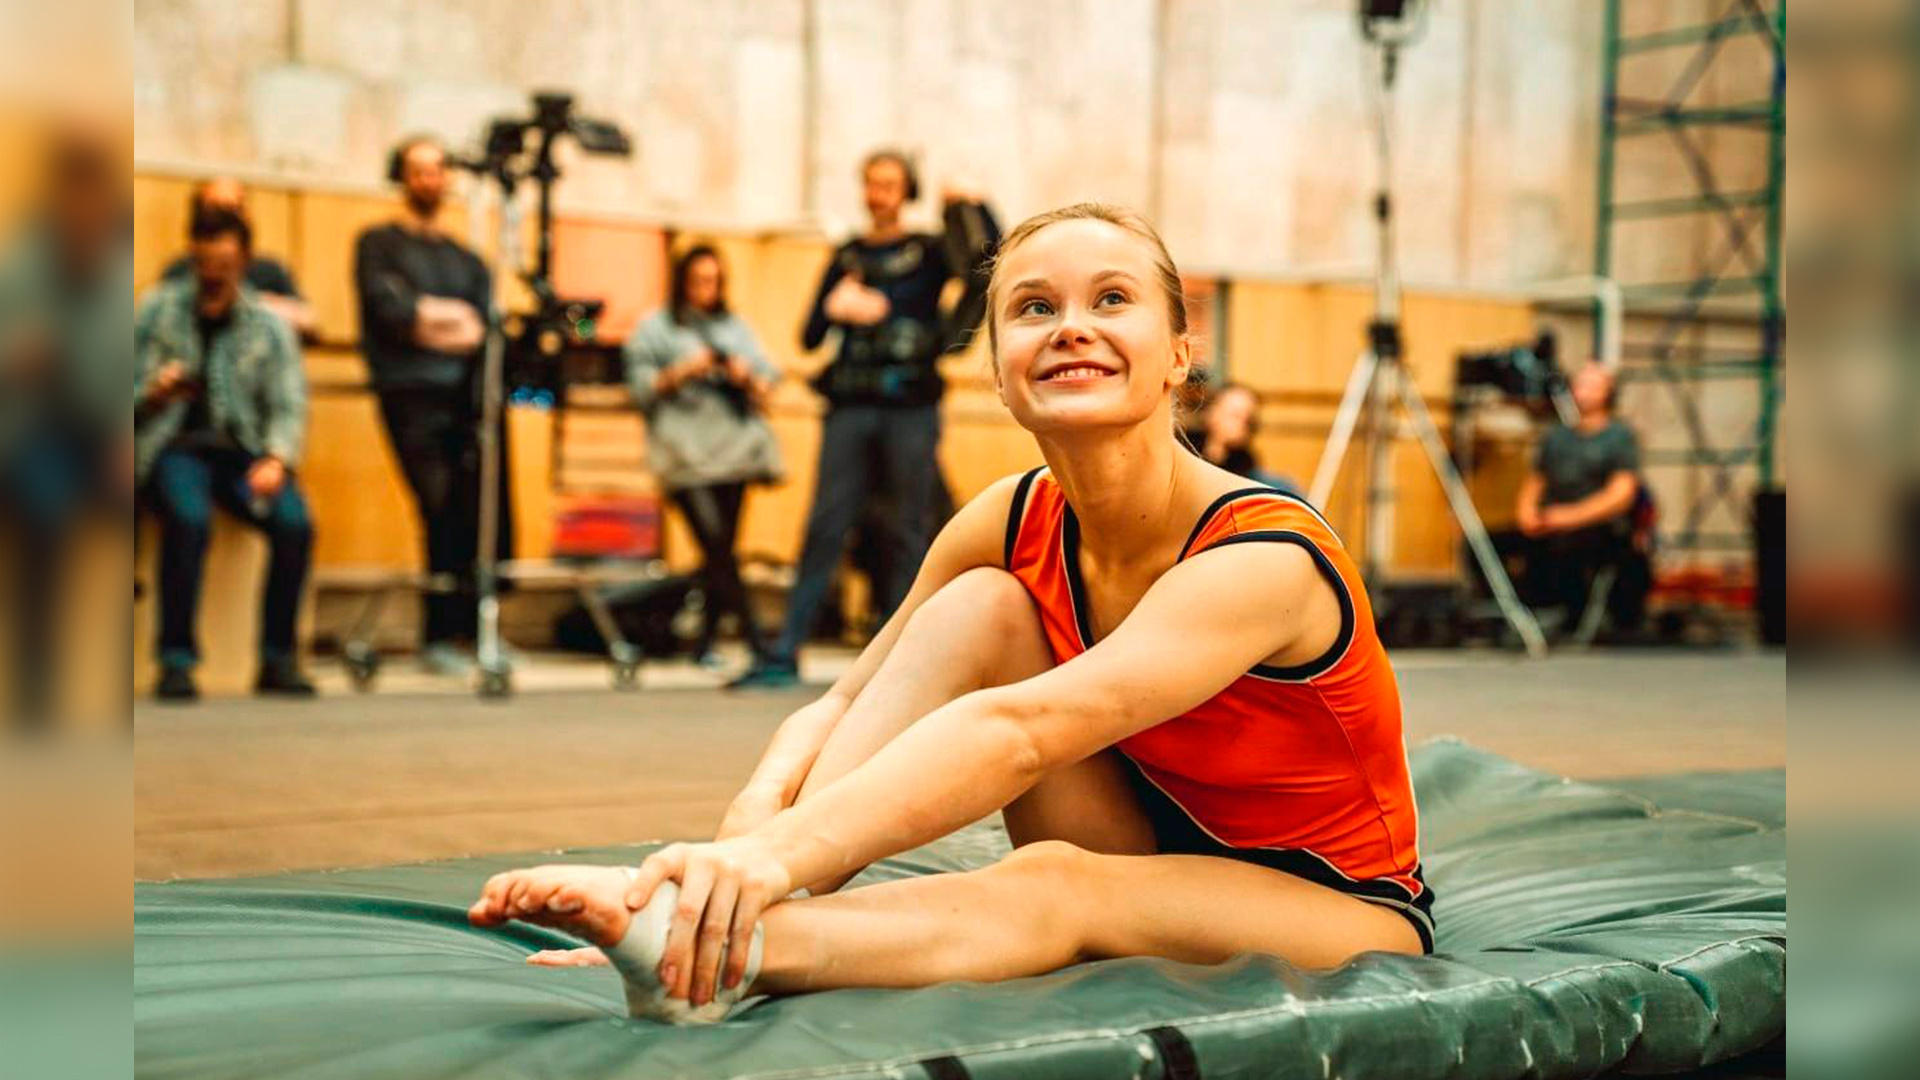 Воронежская гимнастка Ангелина Мельникова появится в сериале про Олимпиаду-80